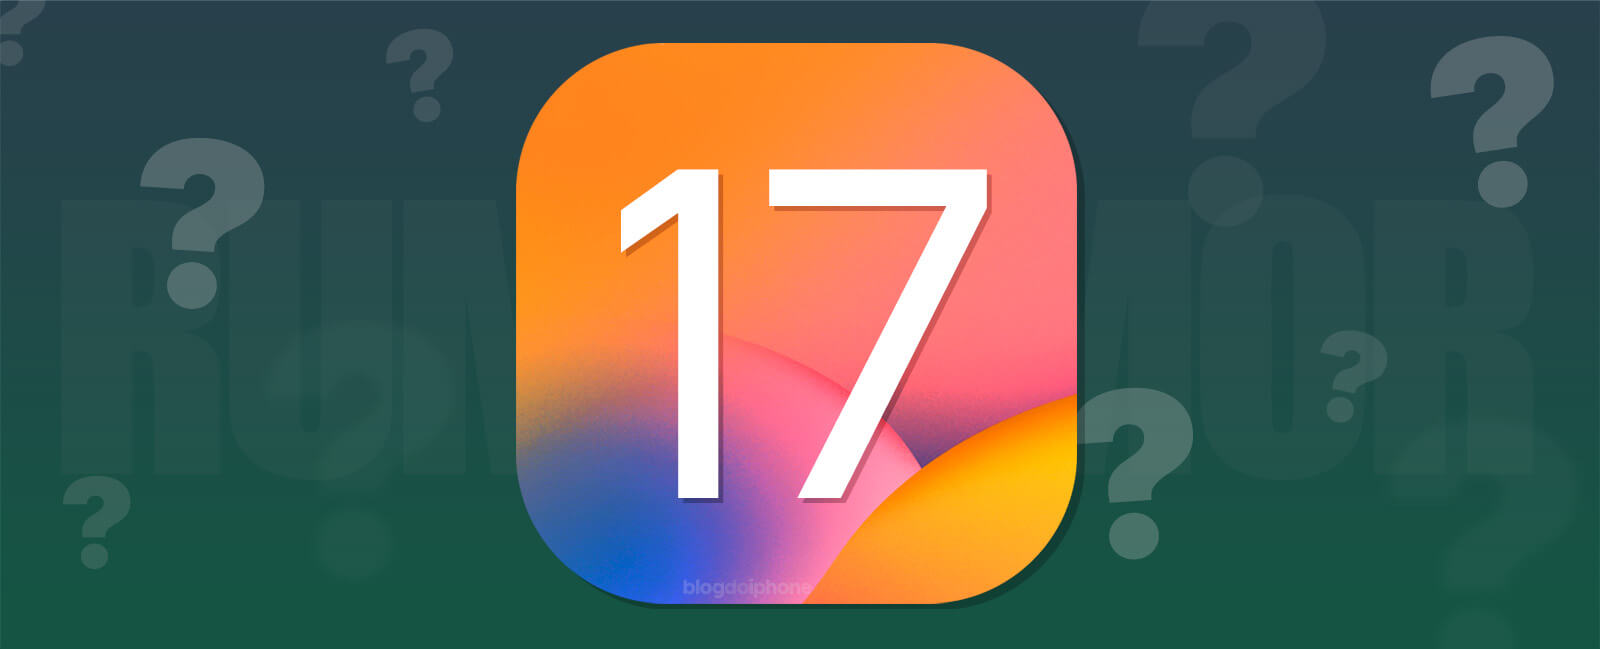 Rumor del iOS 17